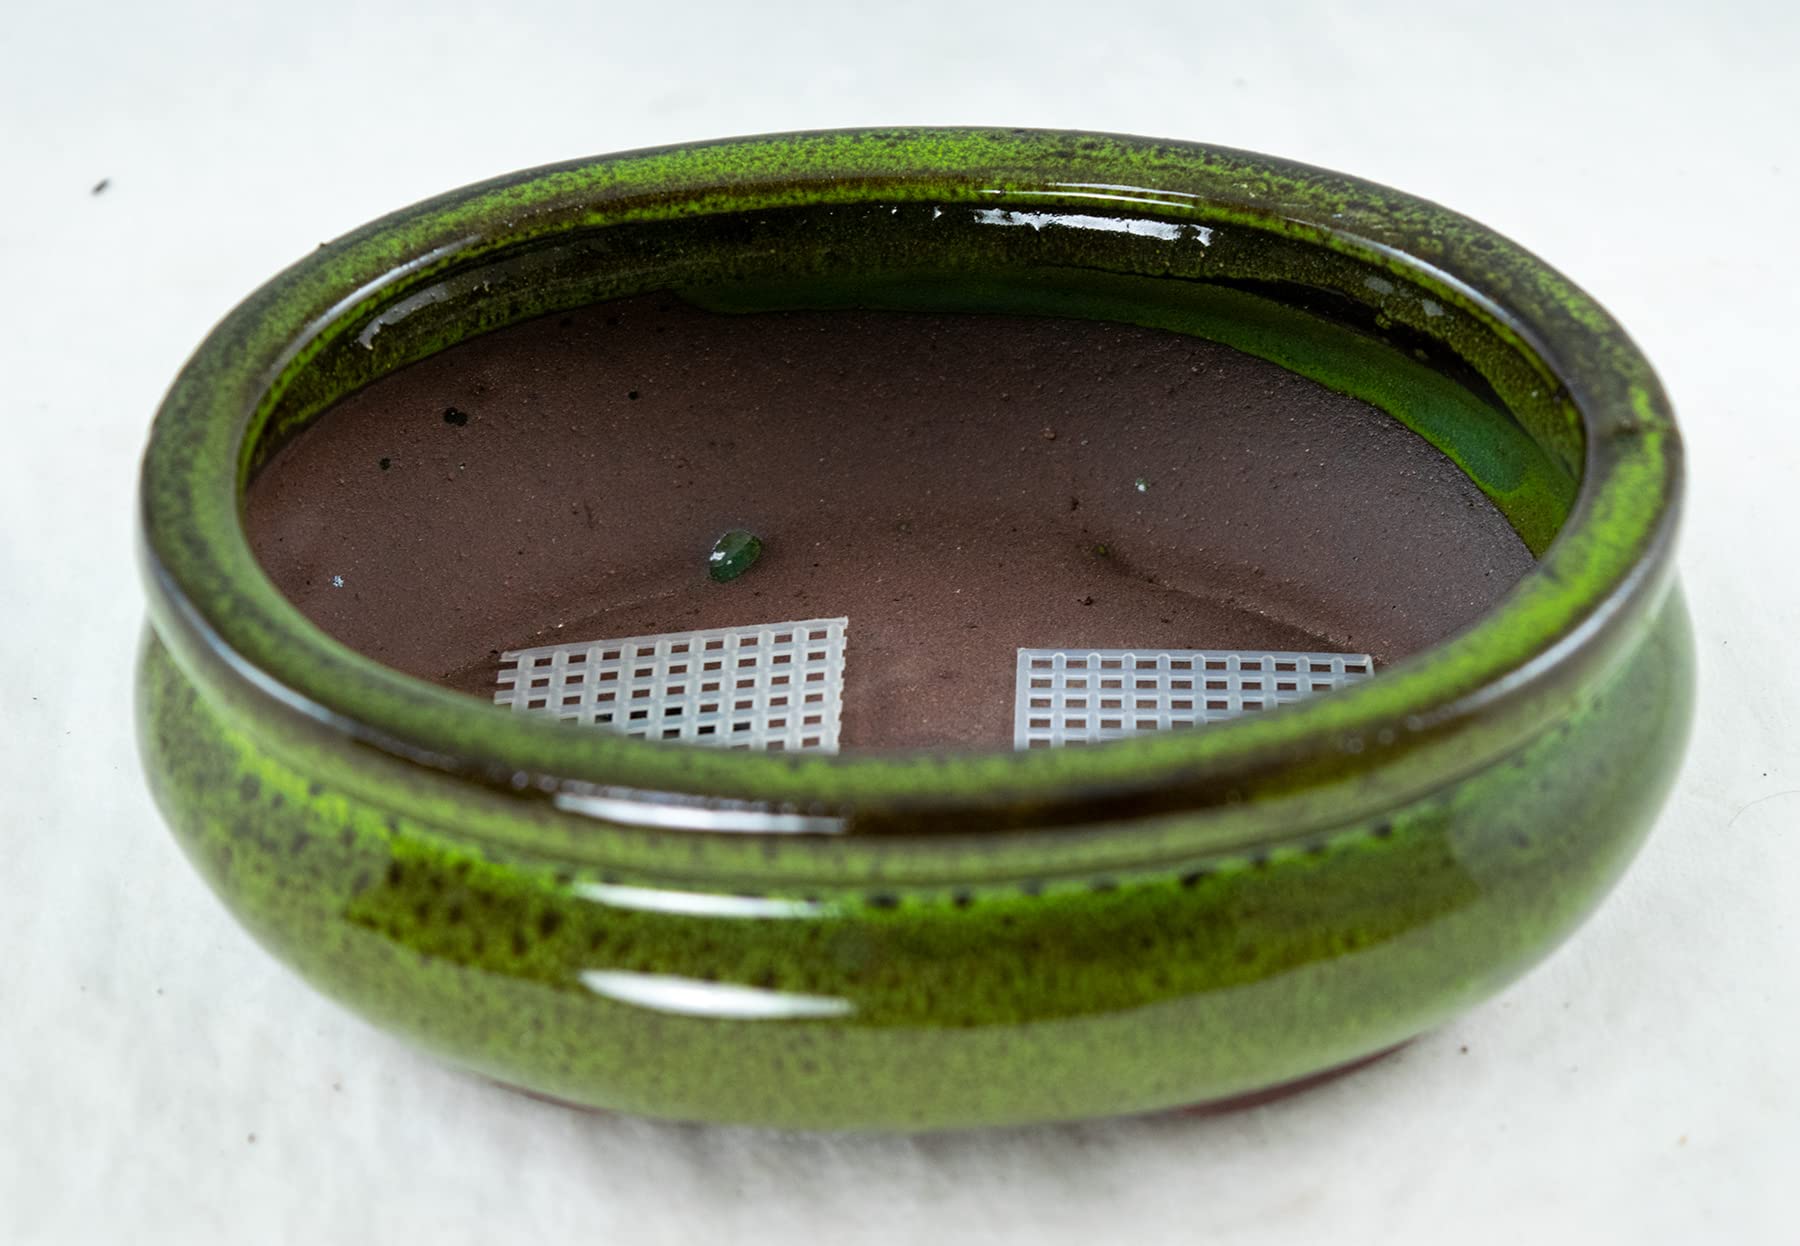 Calibonsai Oval Mame Shohin Bonsai / Cactus & Succulent Pot + Mesh 6inchx 5inchx 2inch - Moss Green Stain Glazed